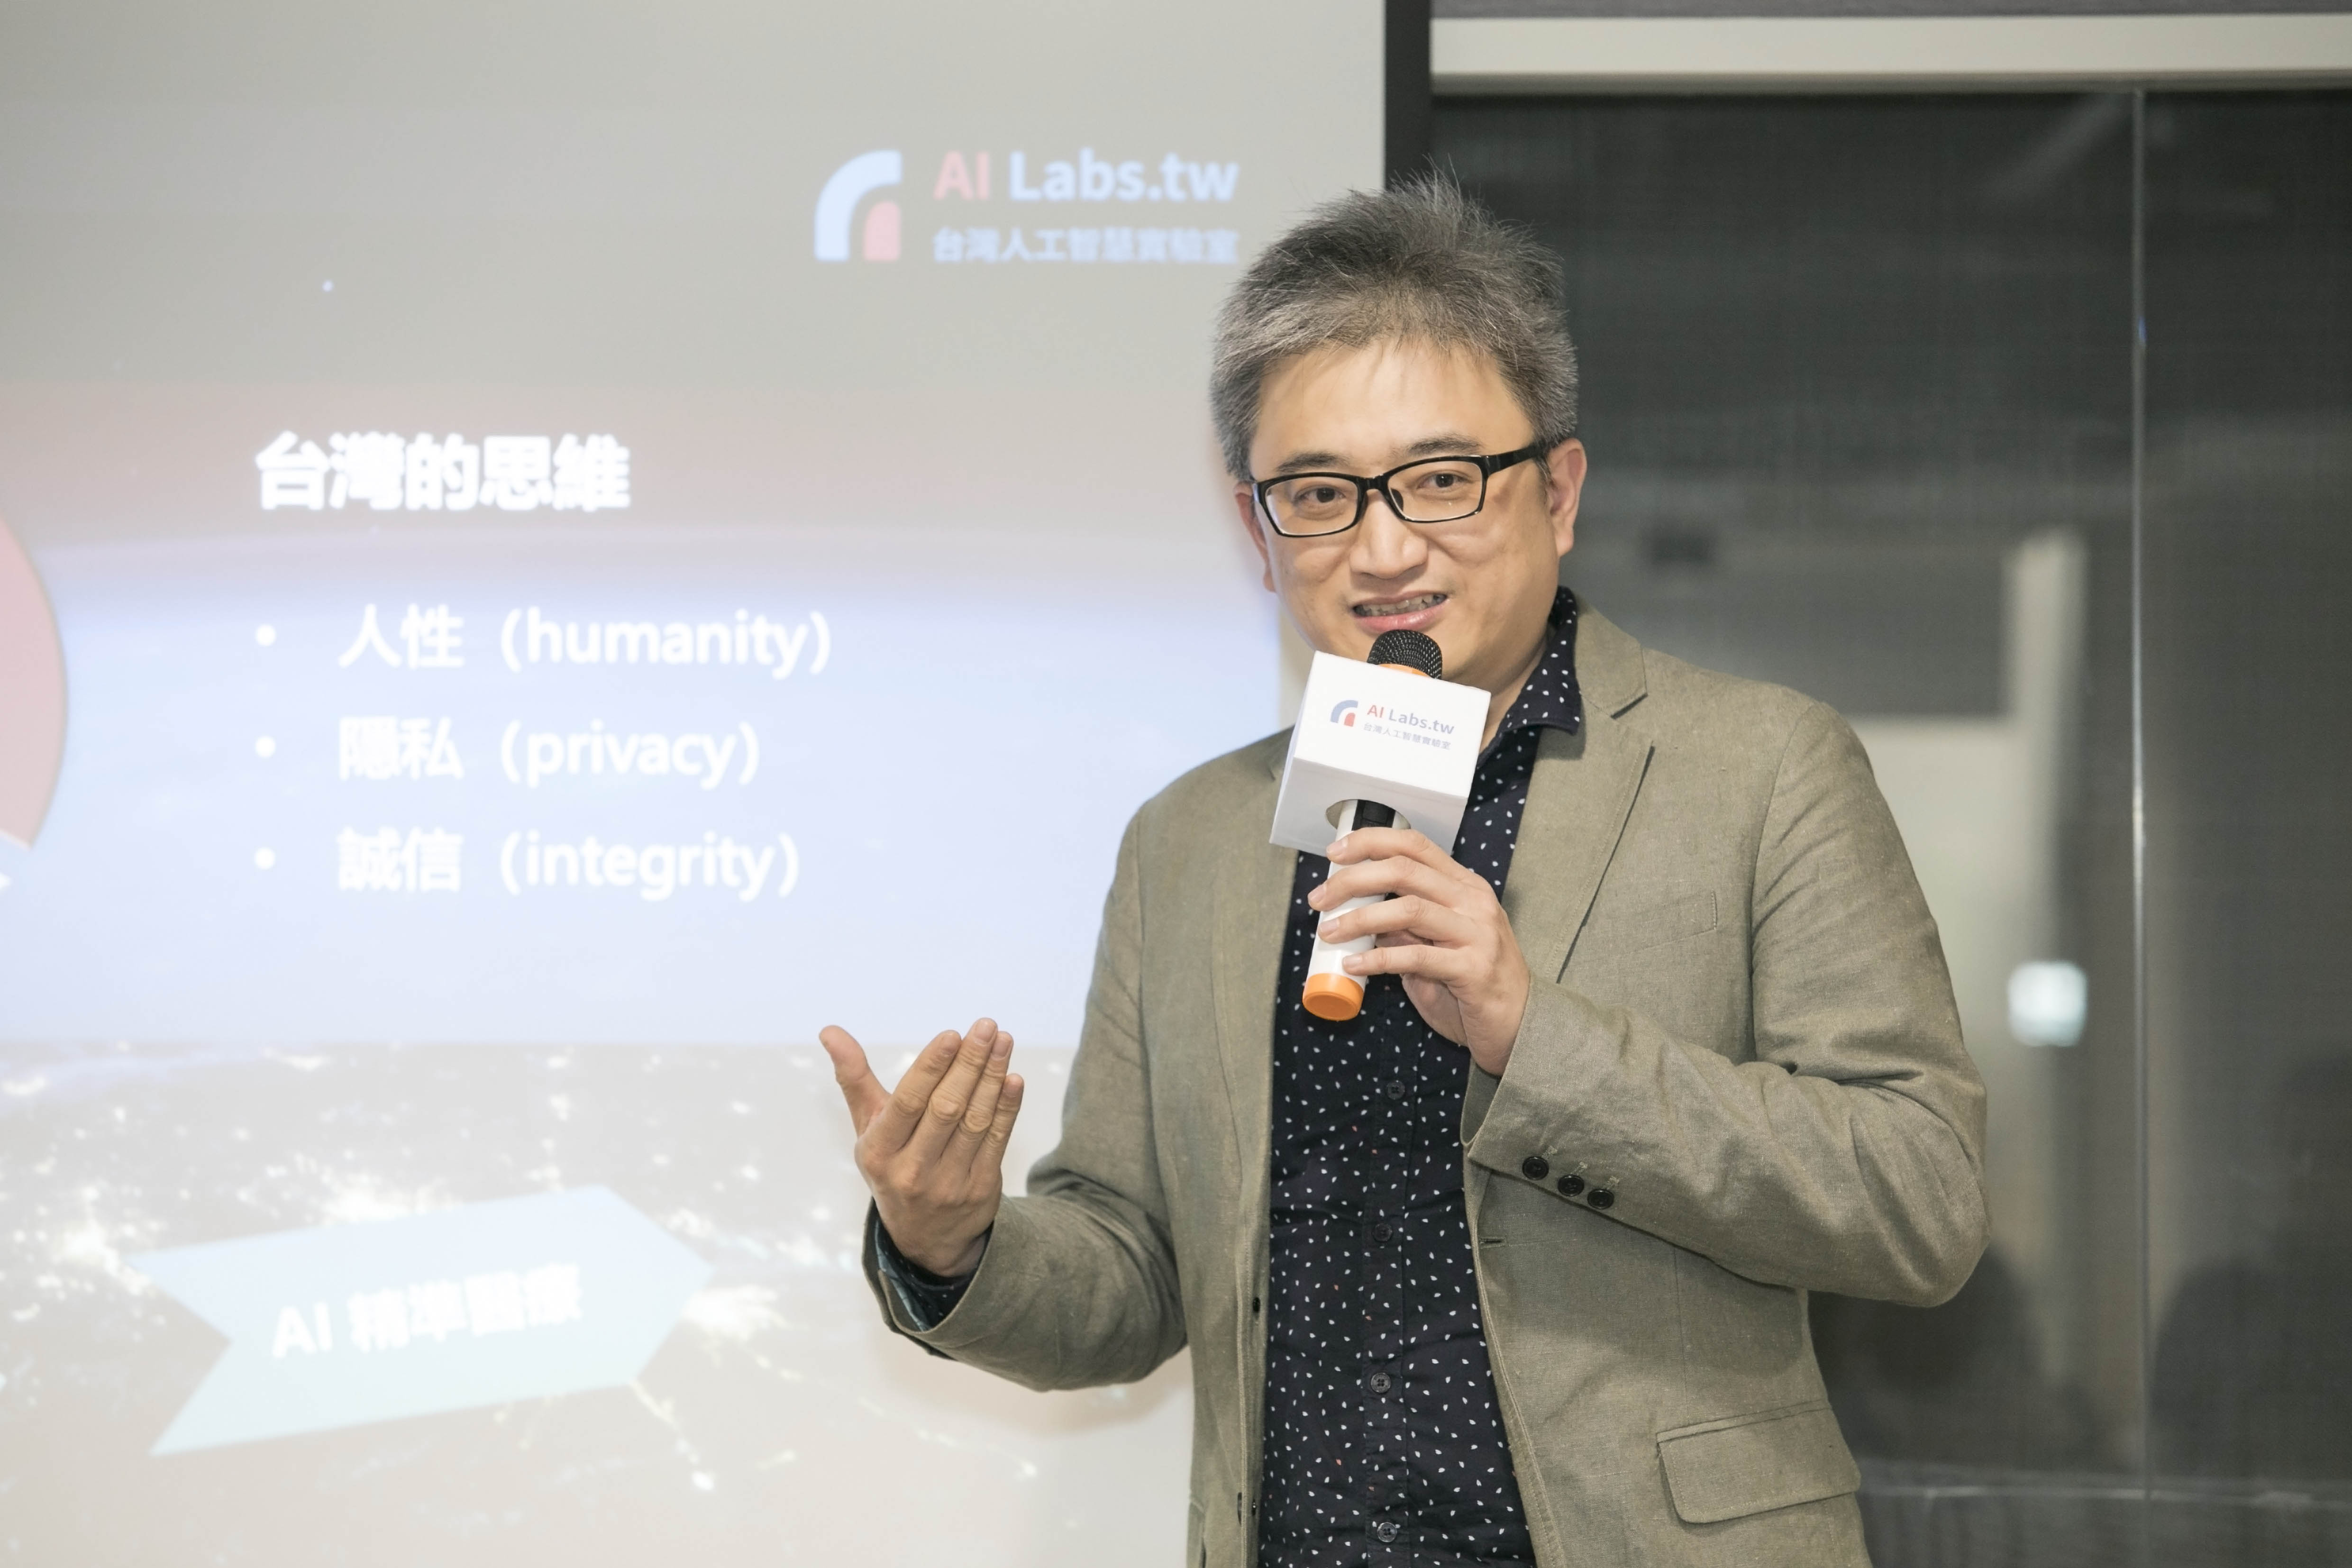 【新聞照片二】：台灣人工智慧實驗室創辦人杜奕瑾表示，希望藉由本次與微軟合作，讓TaiGenomics能發揮台灣的優勢，連結產業利害關係人，透過醫療生態的整合帶動新的生態誕生，進而讓台灣建立世界級的精準醫療生態圈。